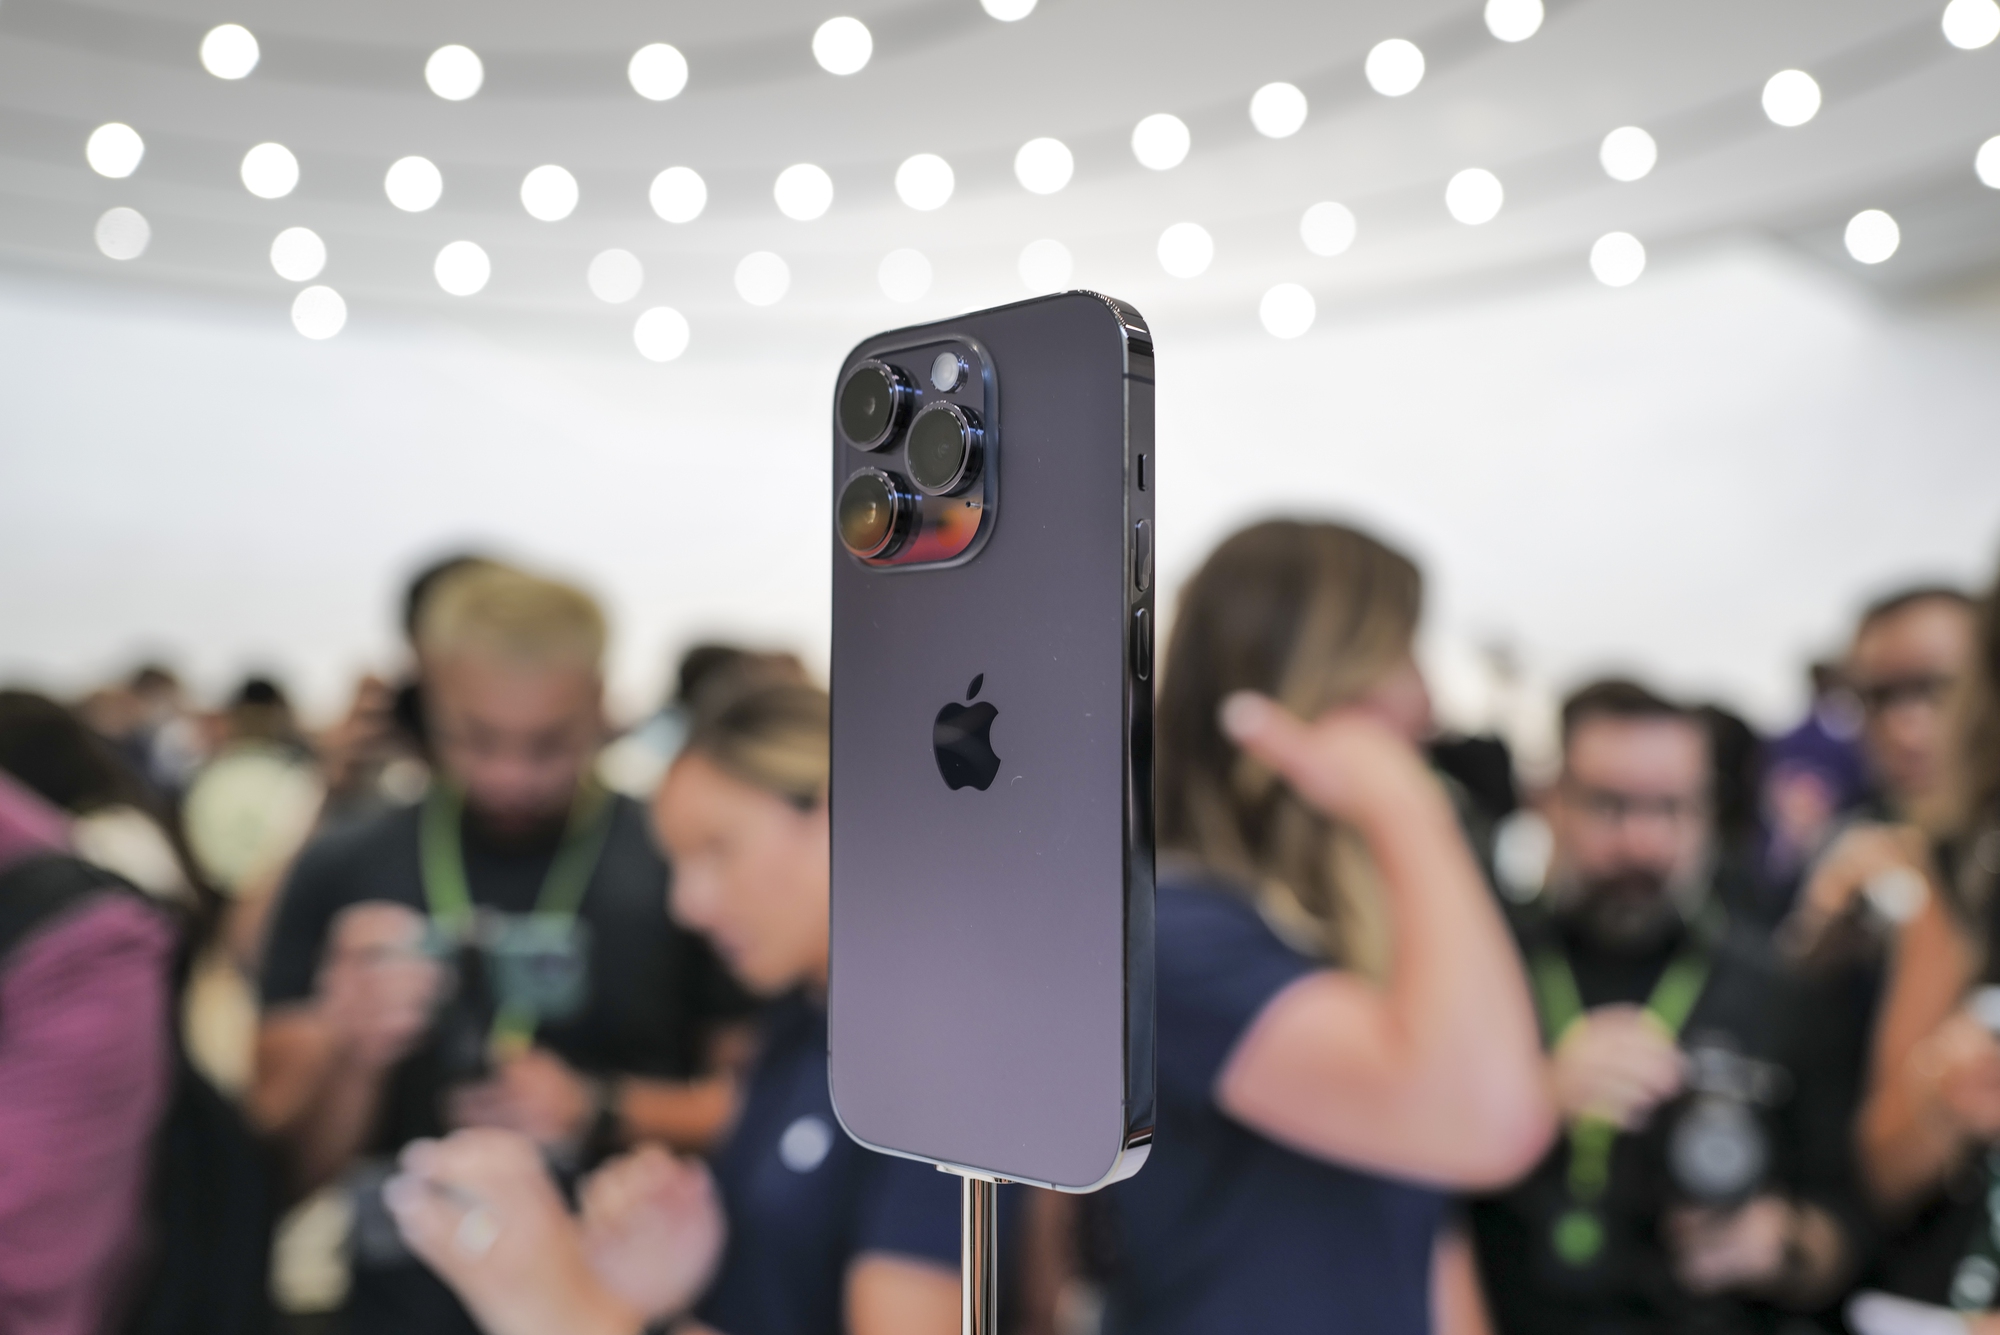 iPhone 14 Pro màu tím: Để sở hữu một chiếc điện thoại vừa đẹp mắt, vừa có hiệu năng tuyệt vời thật đơn giản. Sản phẩm iPhone 14 Pro màu tím tuyệt đẹp của Apple chính là lựa chọn hoàn hảo cho bạn. Hình ảnh mở hộp được chụp lại đầy đủ, giúp bạn hình dung từng chi tiết của thiết bị.